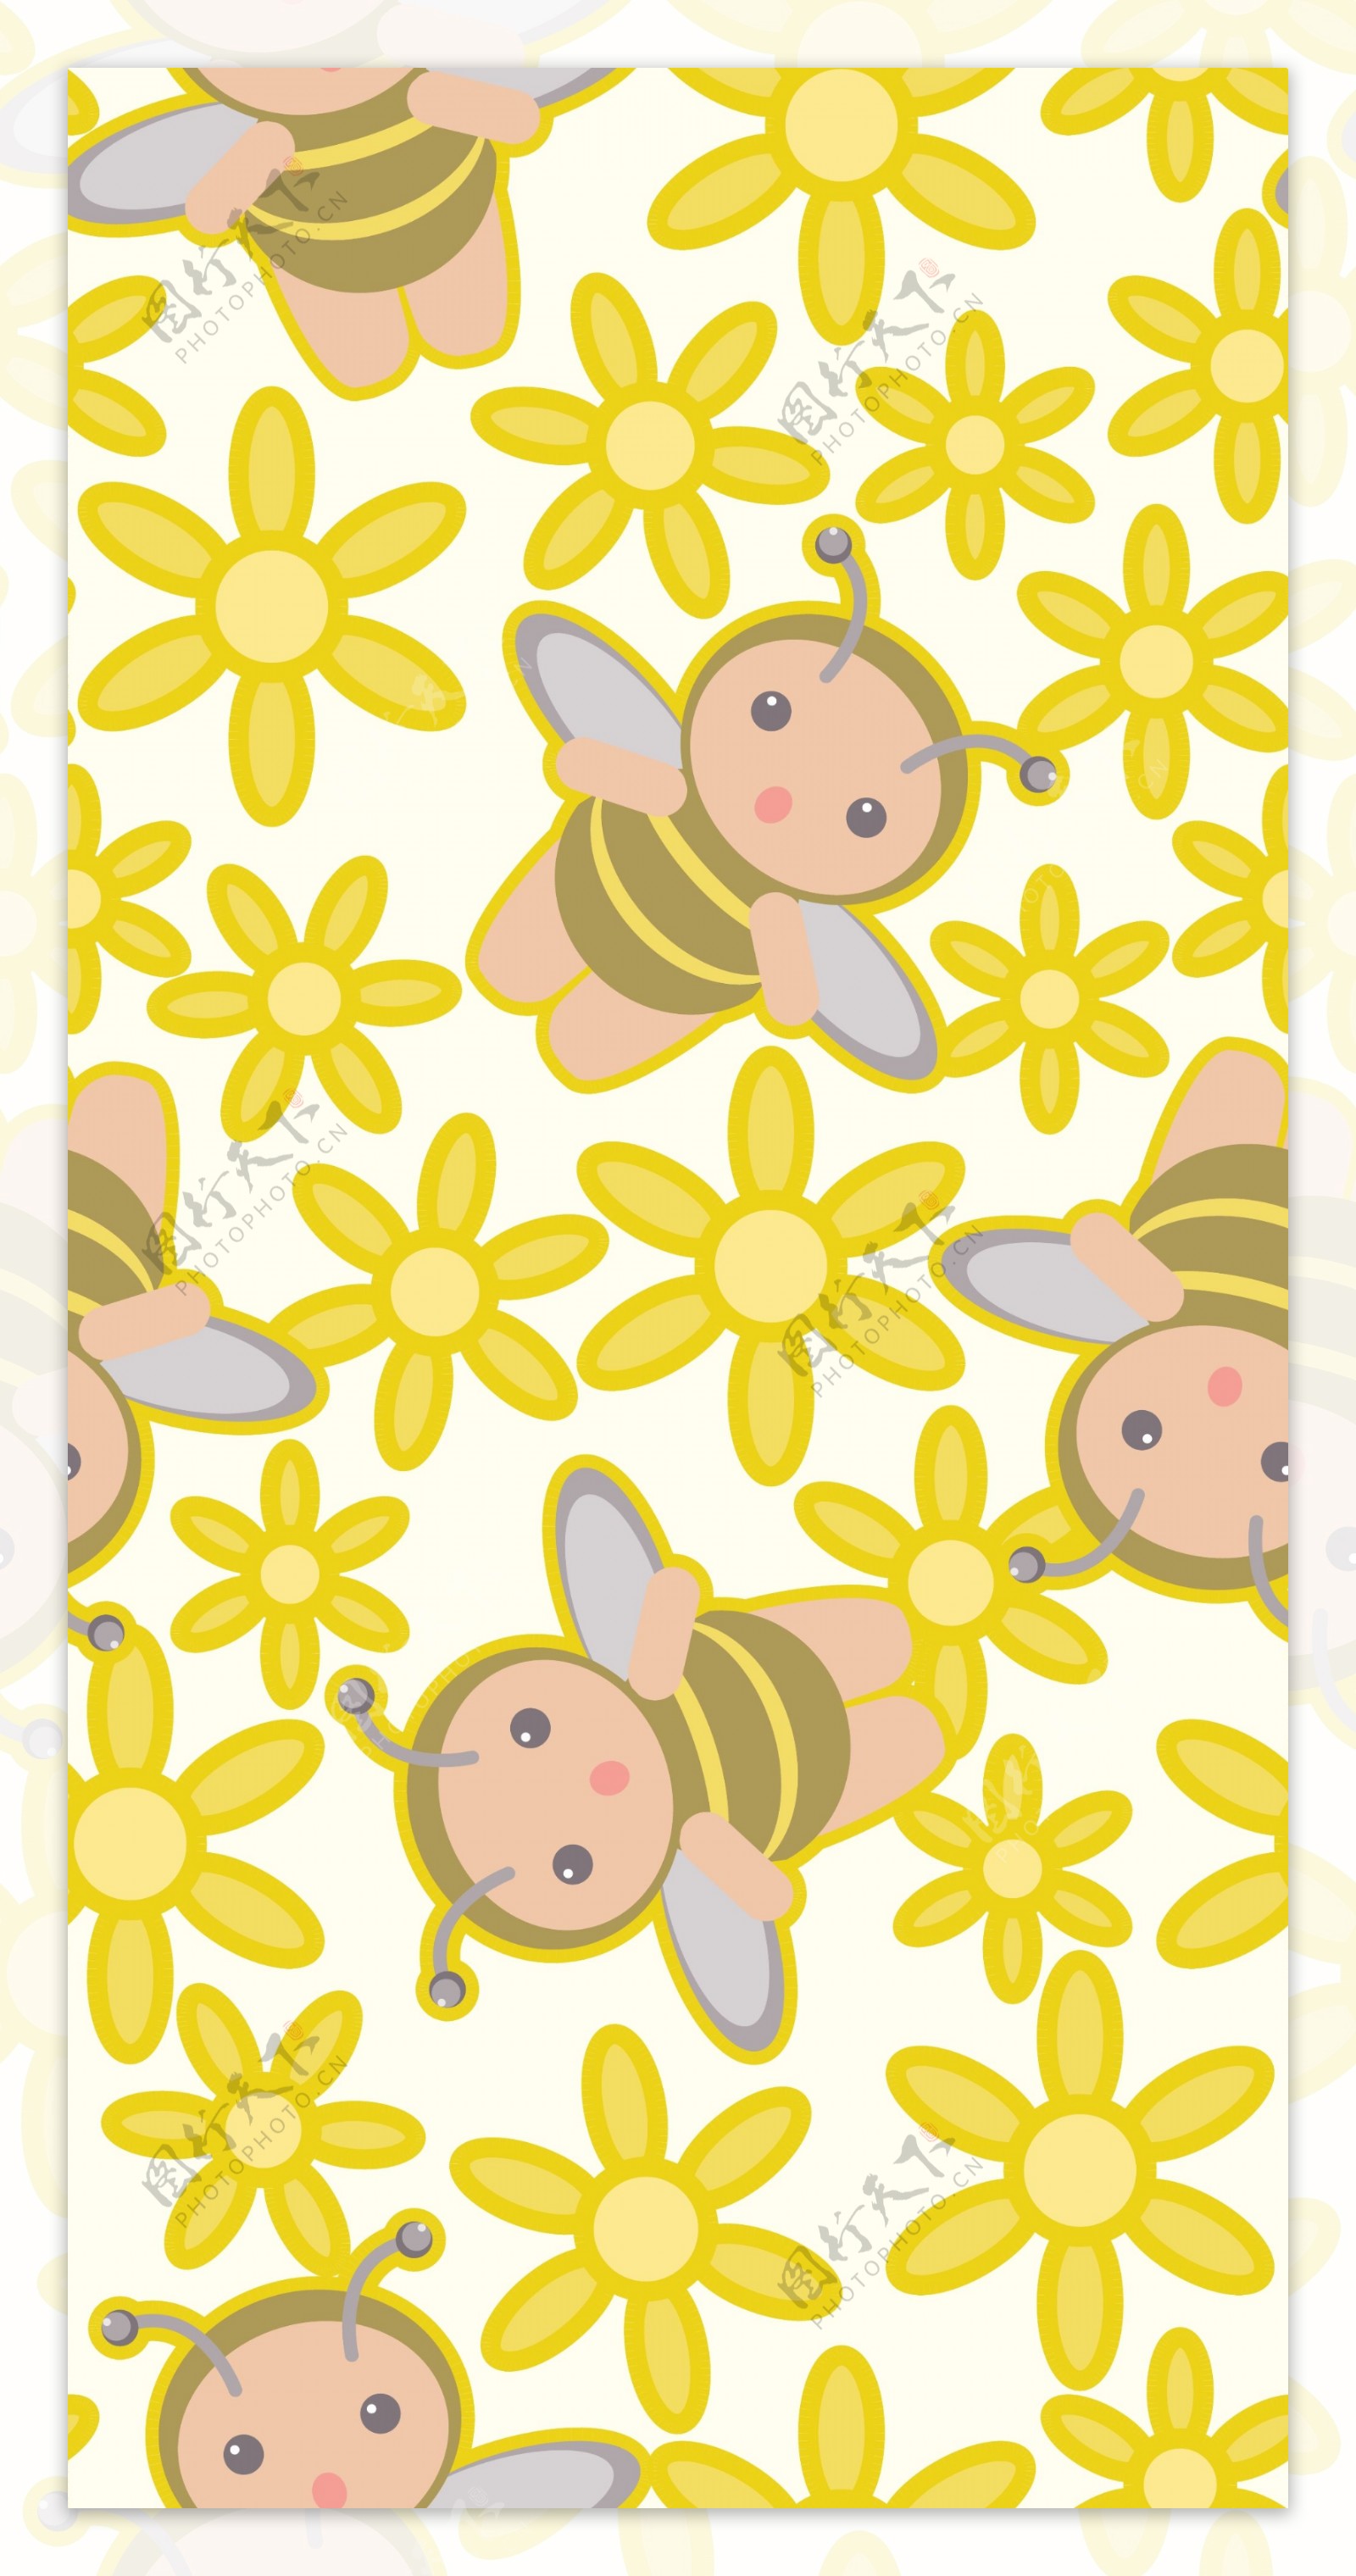 可爱蜜蜂花朵连续背景矢量素材3